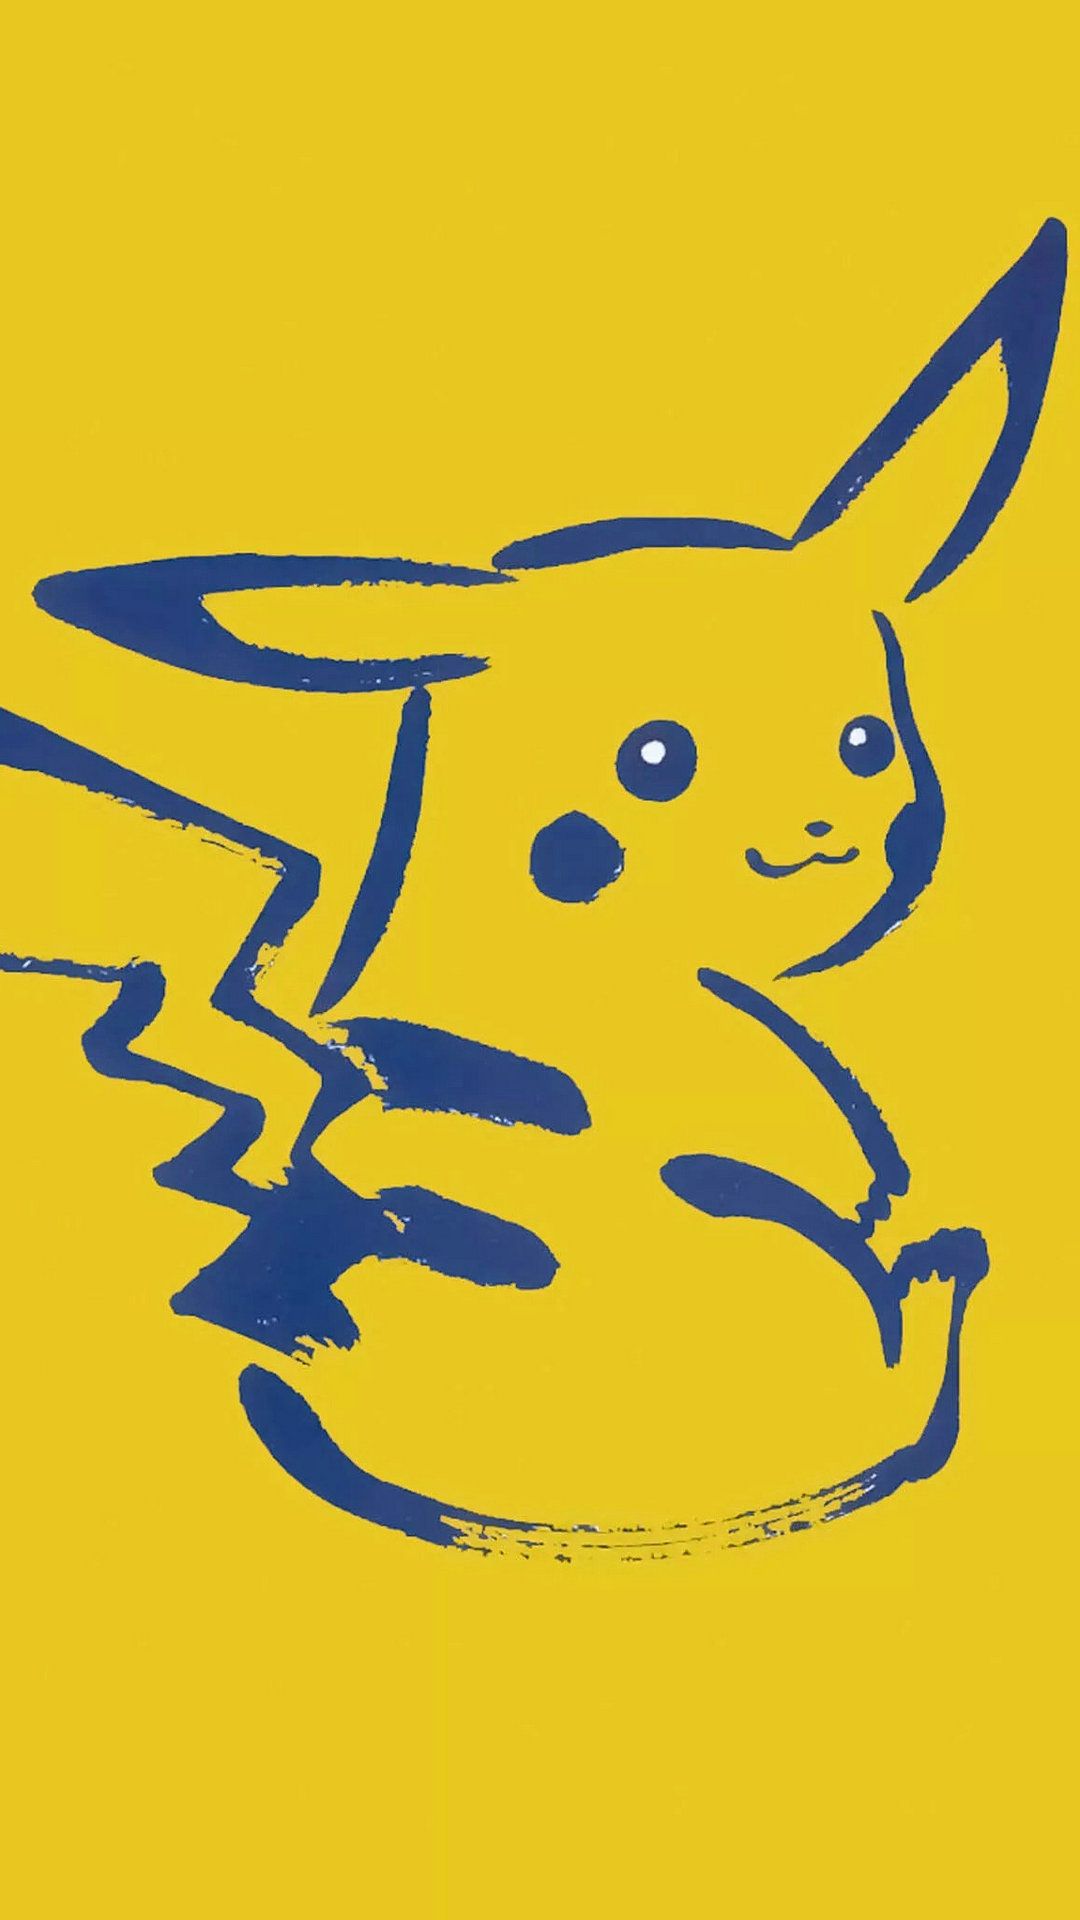 Pikachu wallpaper. Pikachu wallpaper, Pikachu, Pikachu costume